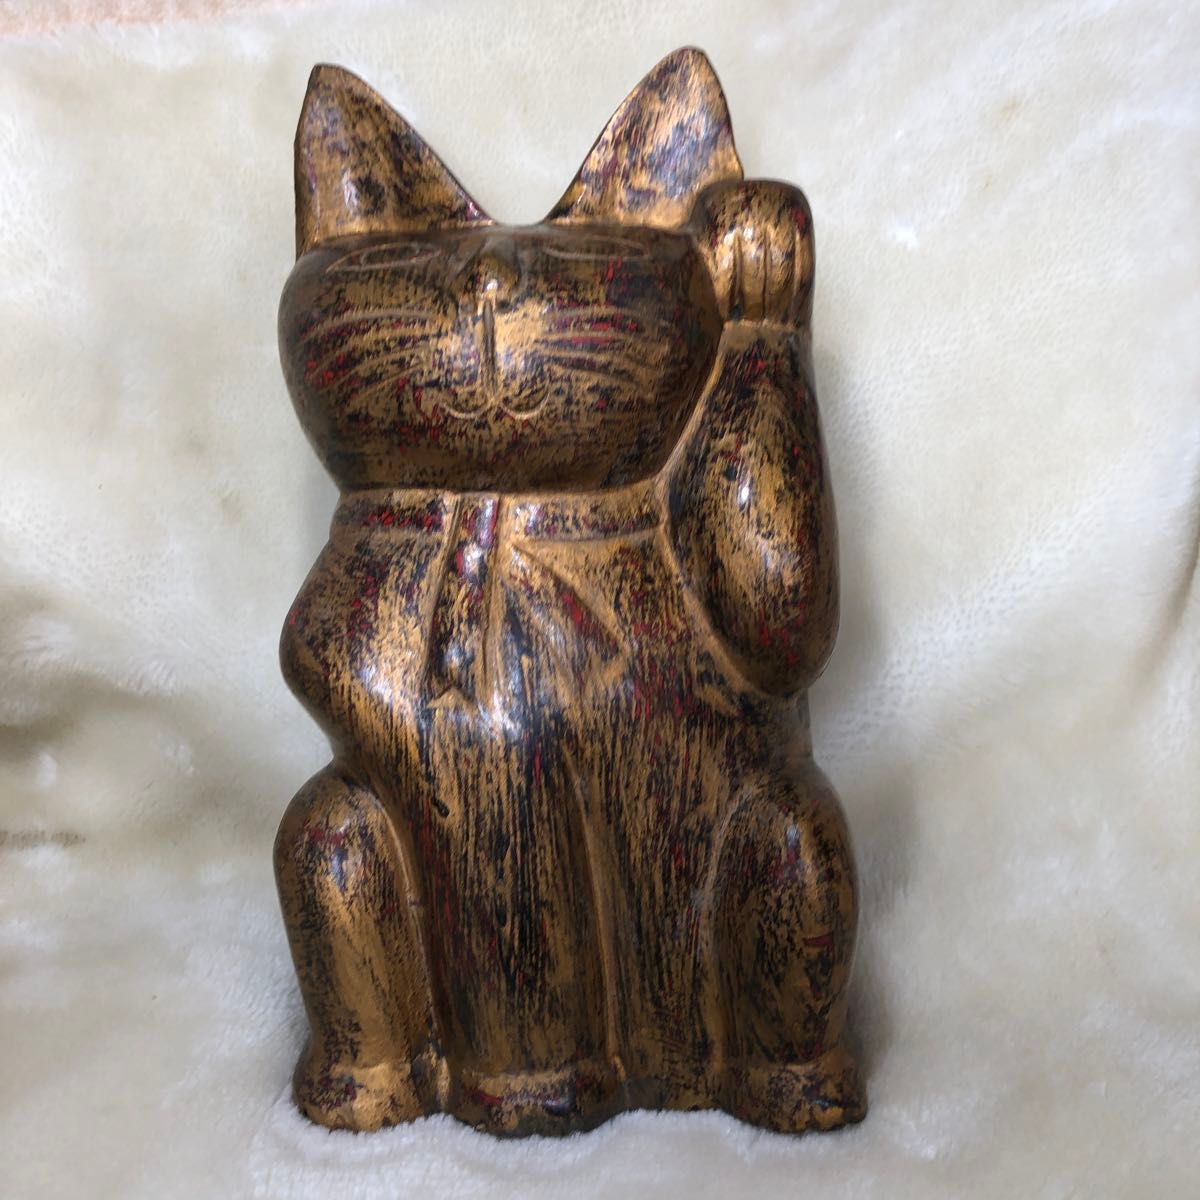 招き猫　招き幸運猫　一木彫り　全体はレッドゴールド。その上にランダムにゴールド色の被せ。明るい場所では輝き、福の神に。幸運を招く猫